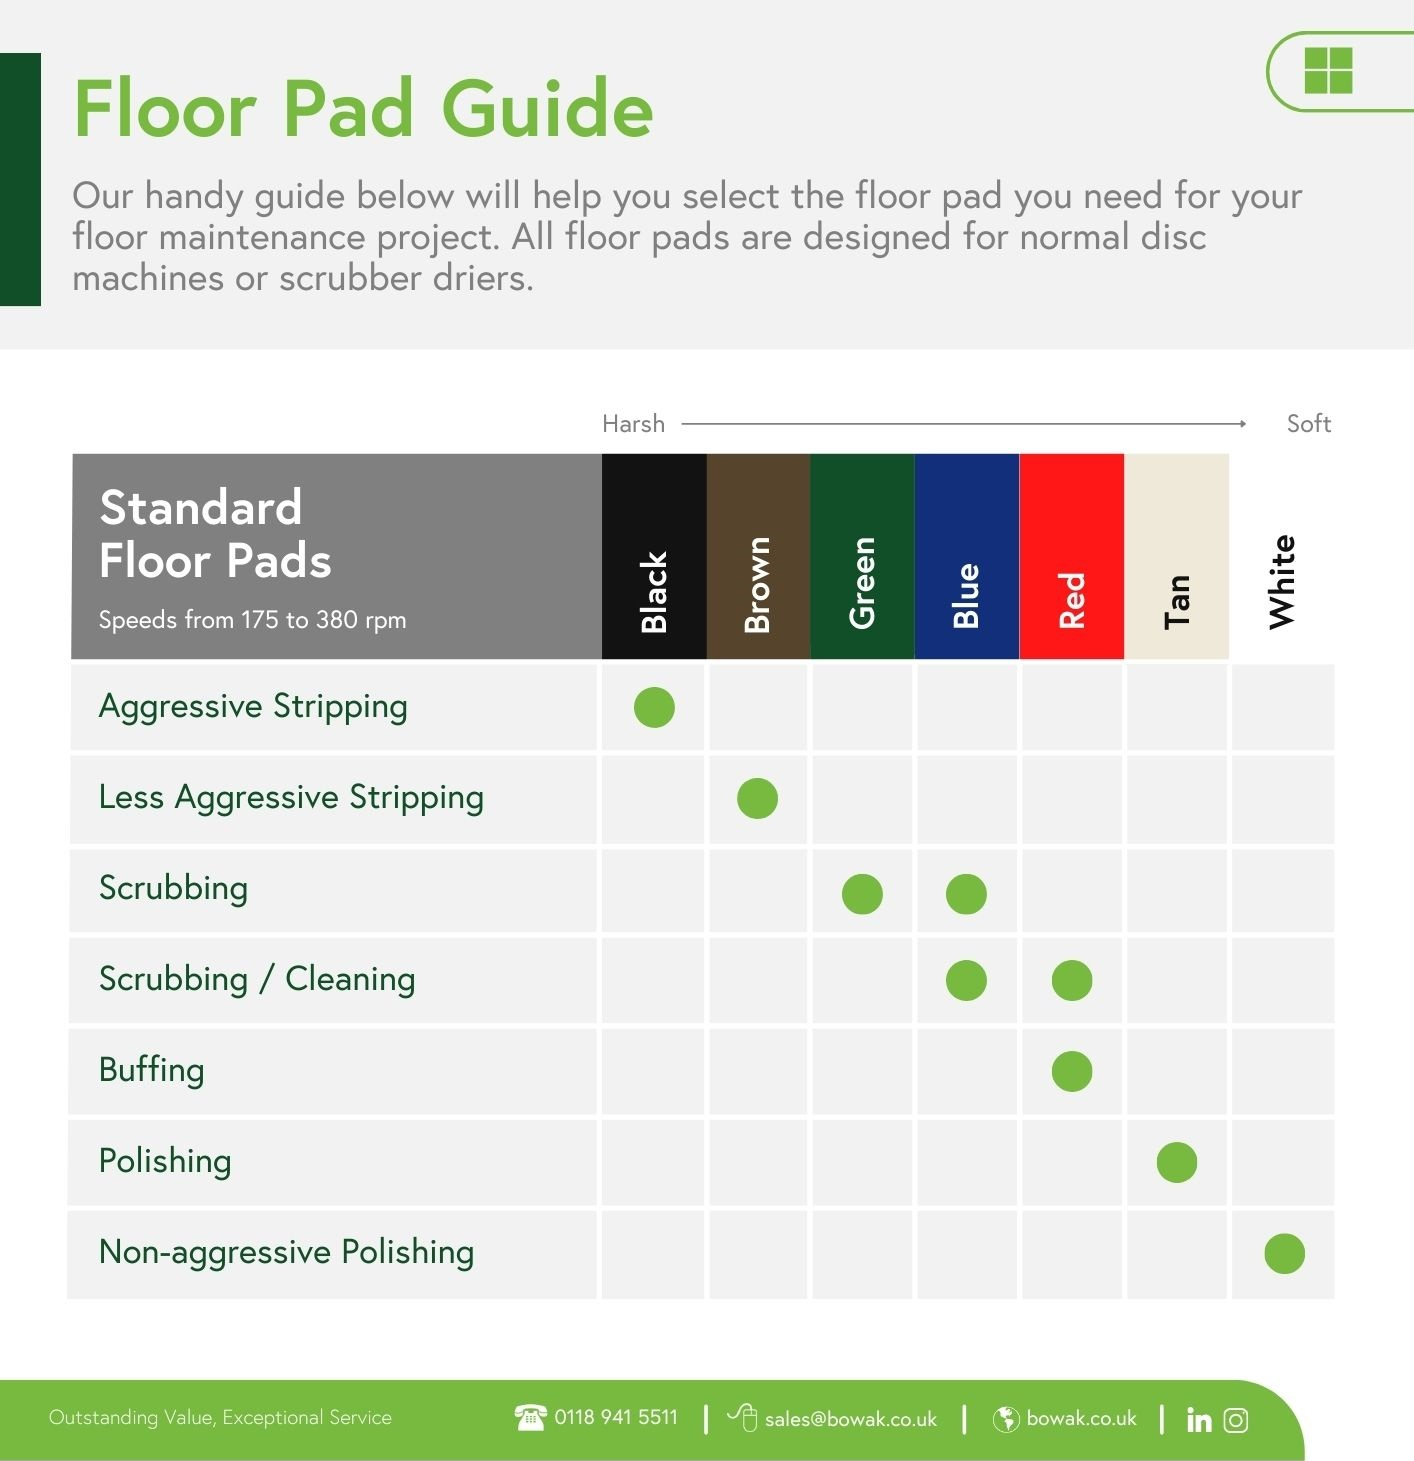 Understanding Our Range of Floor Pads